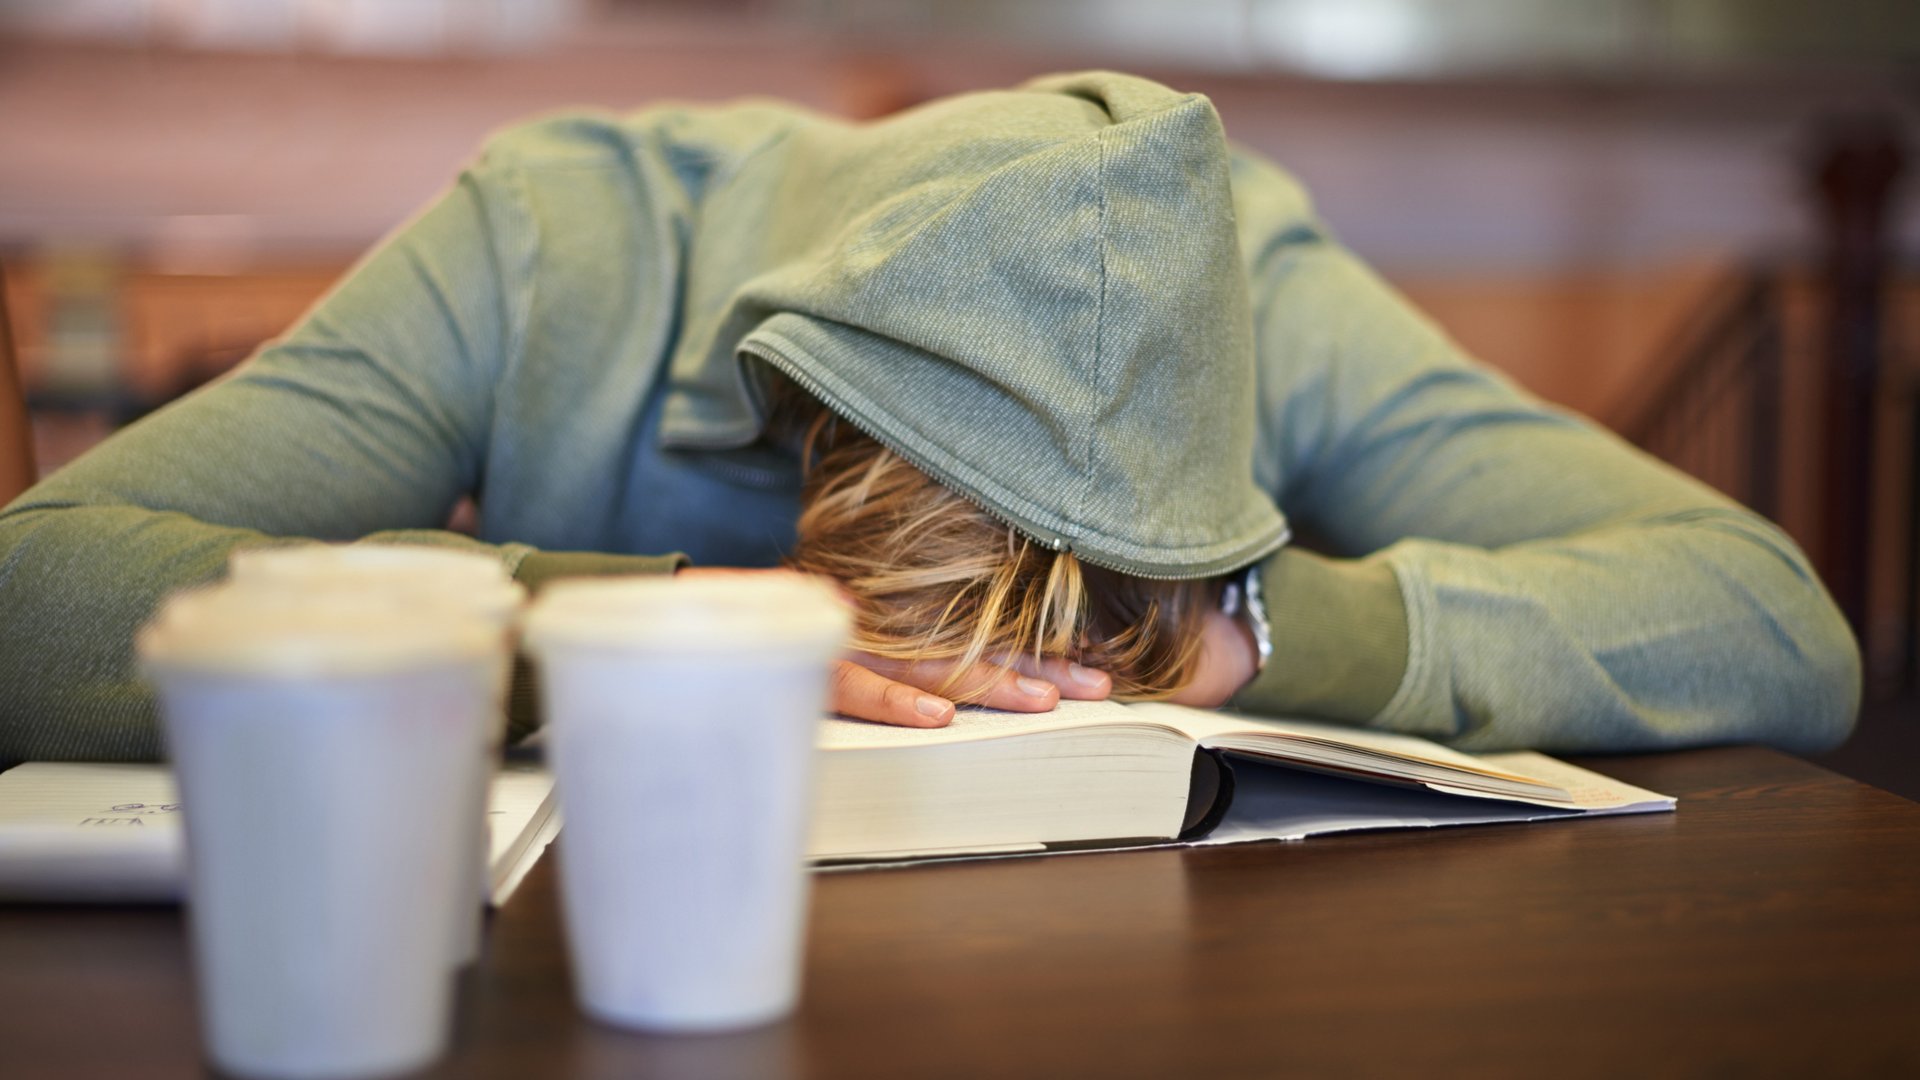 Ein Schüler in einem grauen Kapuzenpulli schläft im Unterricht ein